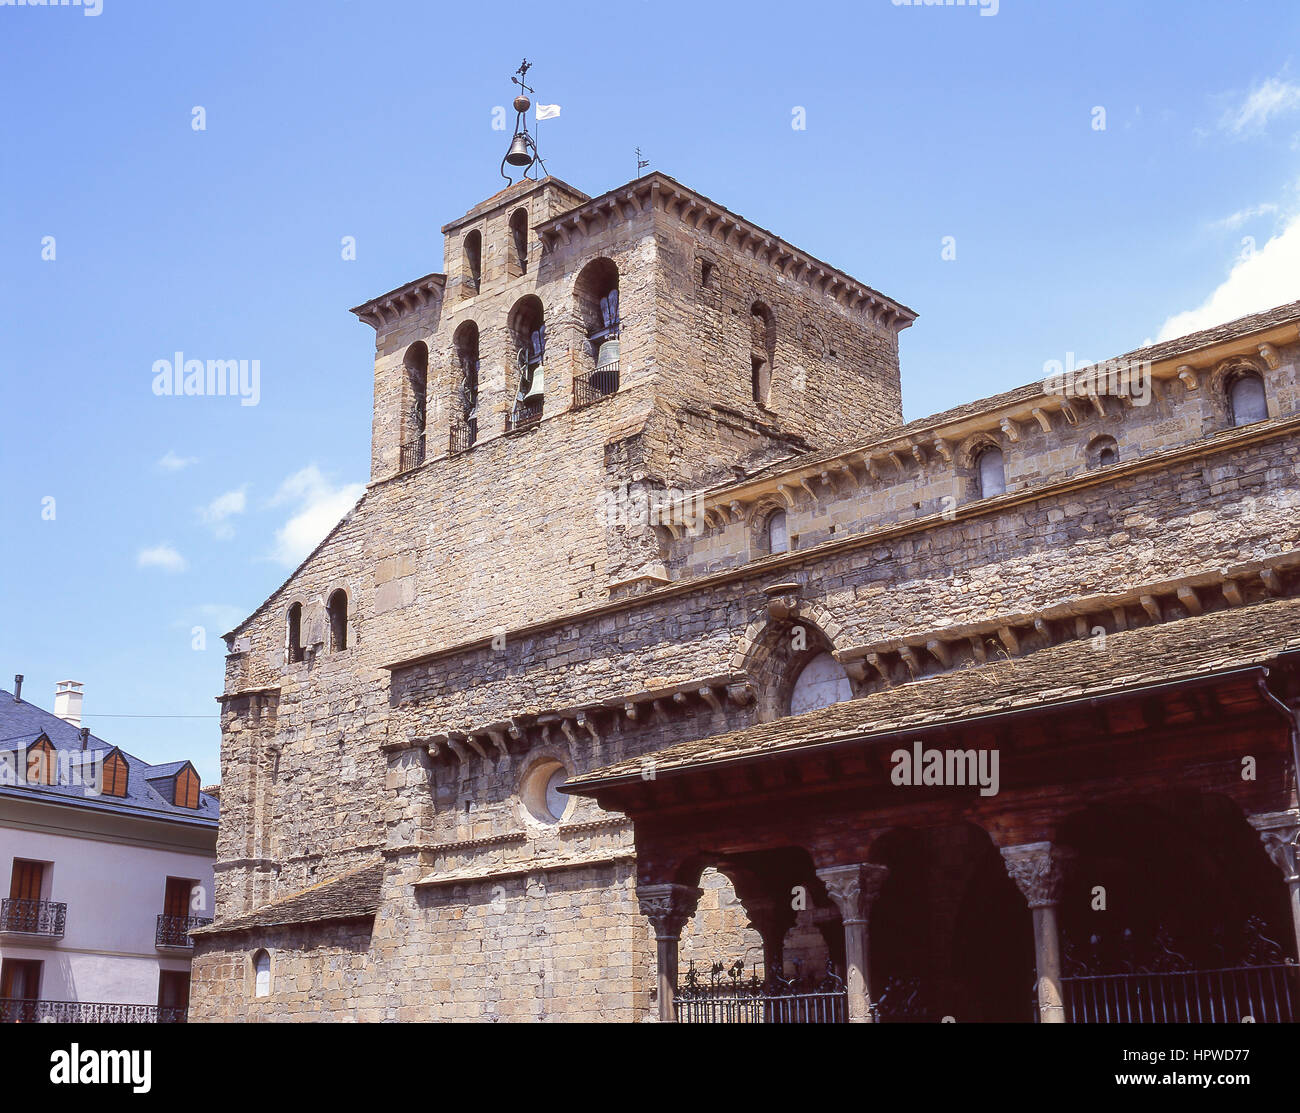 La cathédrale romane du xie siècle, la Plaza de la Catedral, Jaca, Huesca Province, Aragon, Royaume d'Espagne Banque D'Images